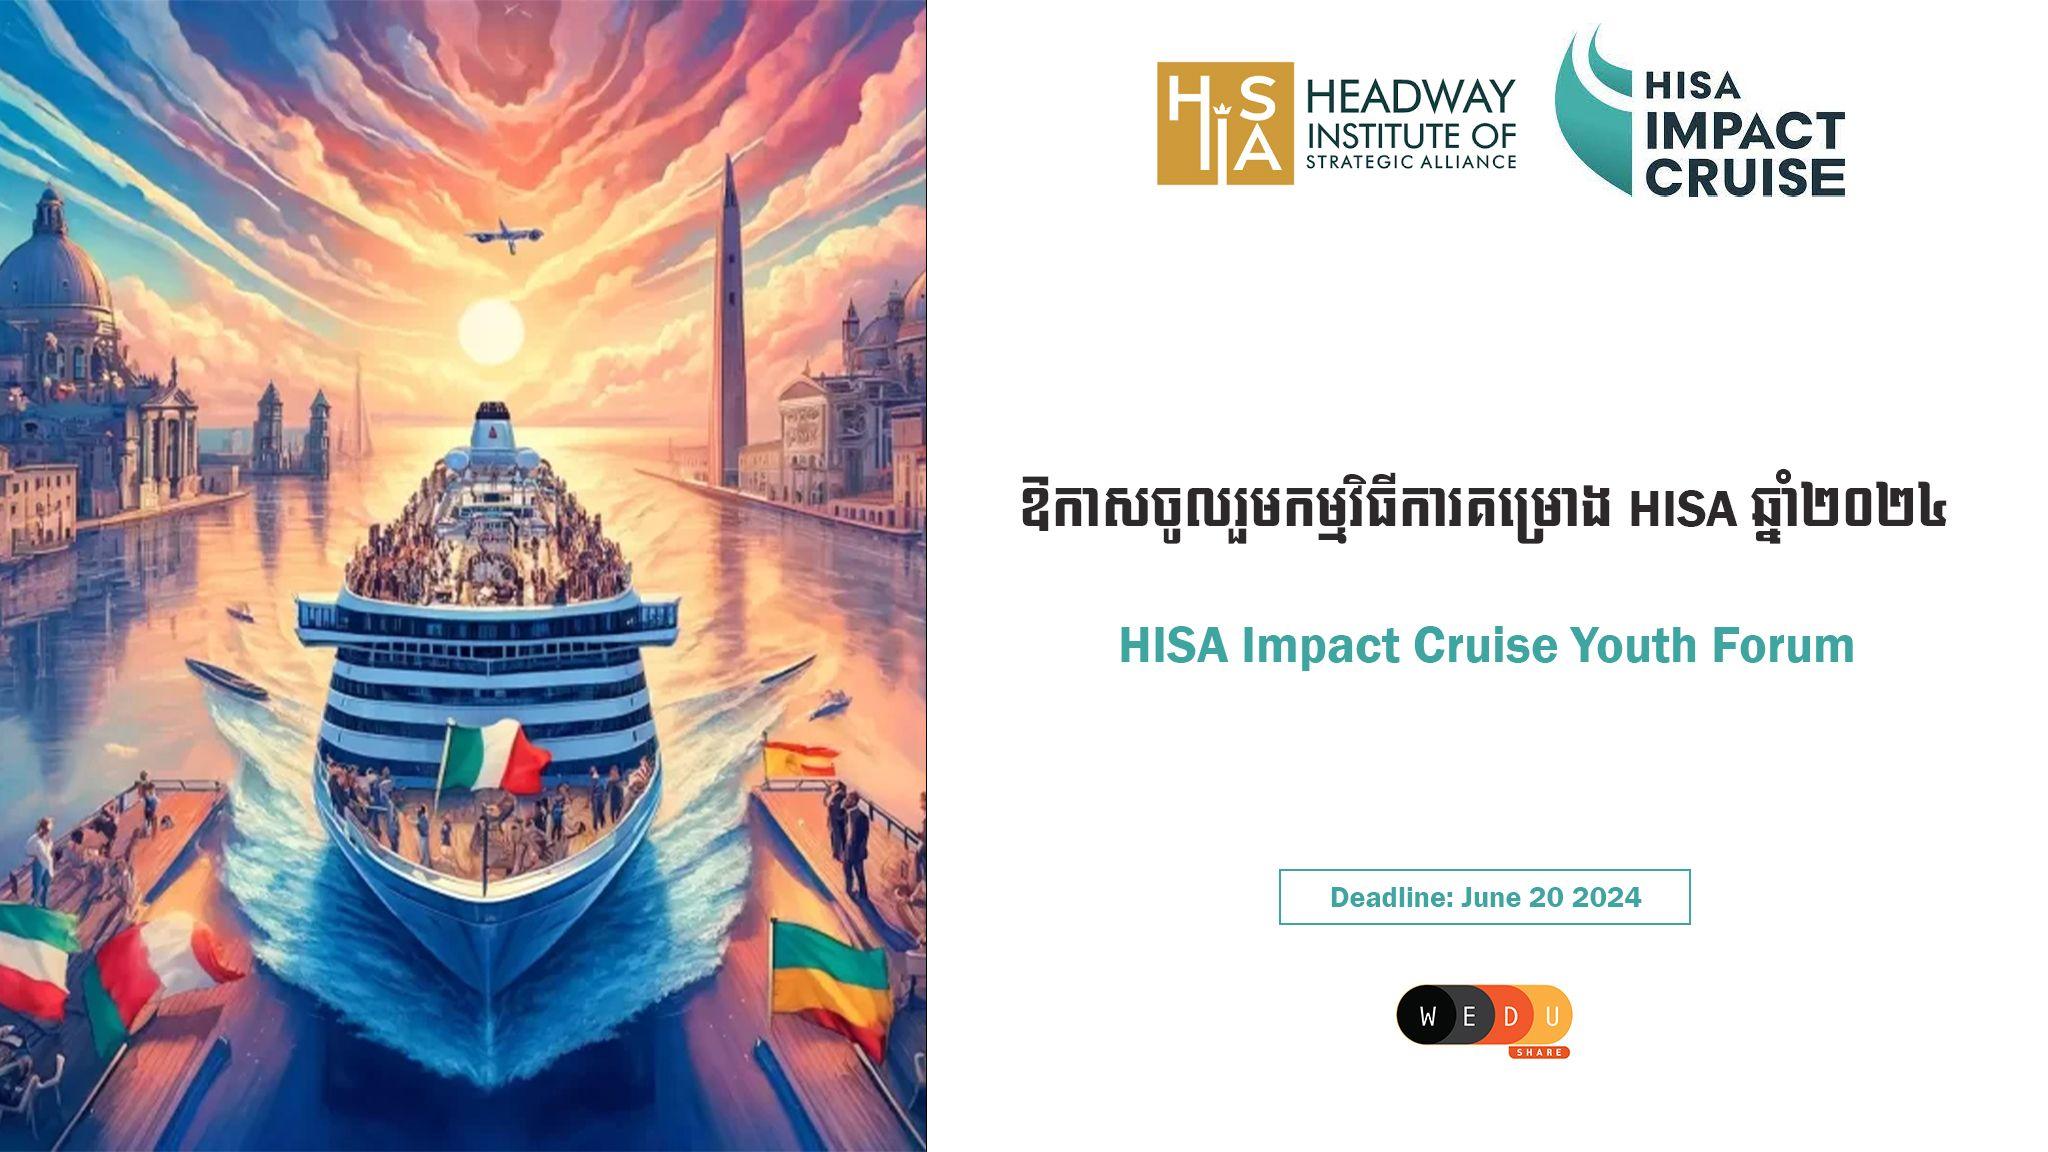 HISA Impact Cruise Youth Forum 2024